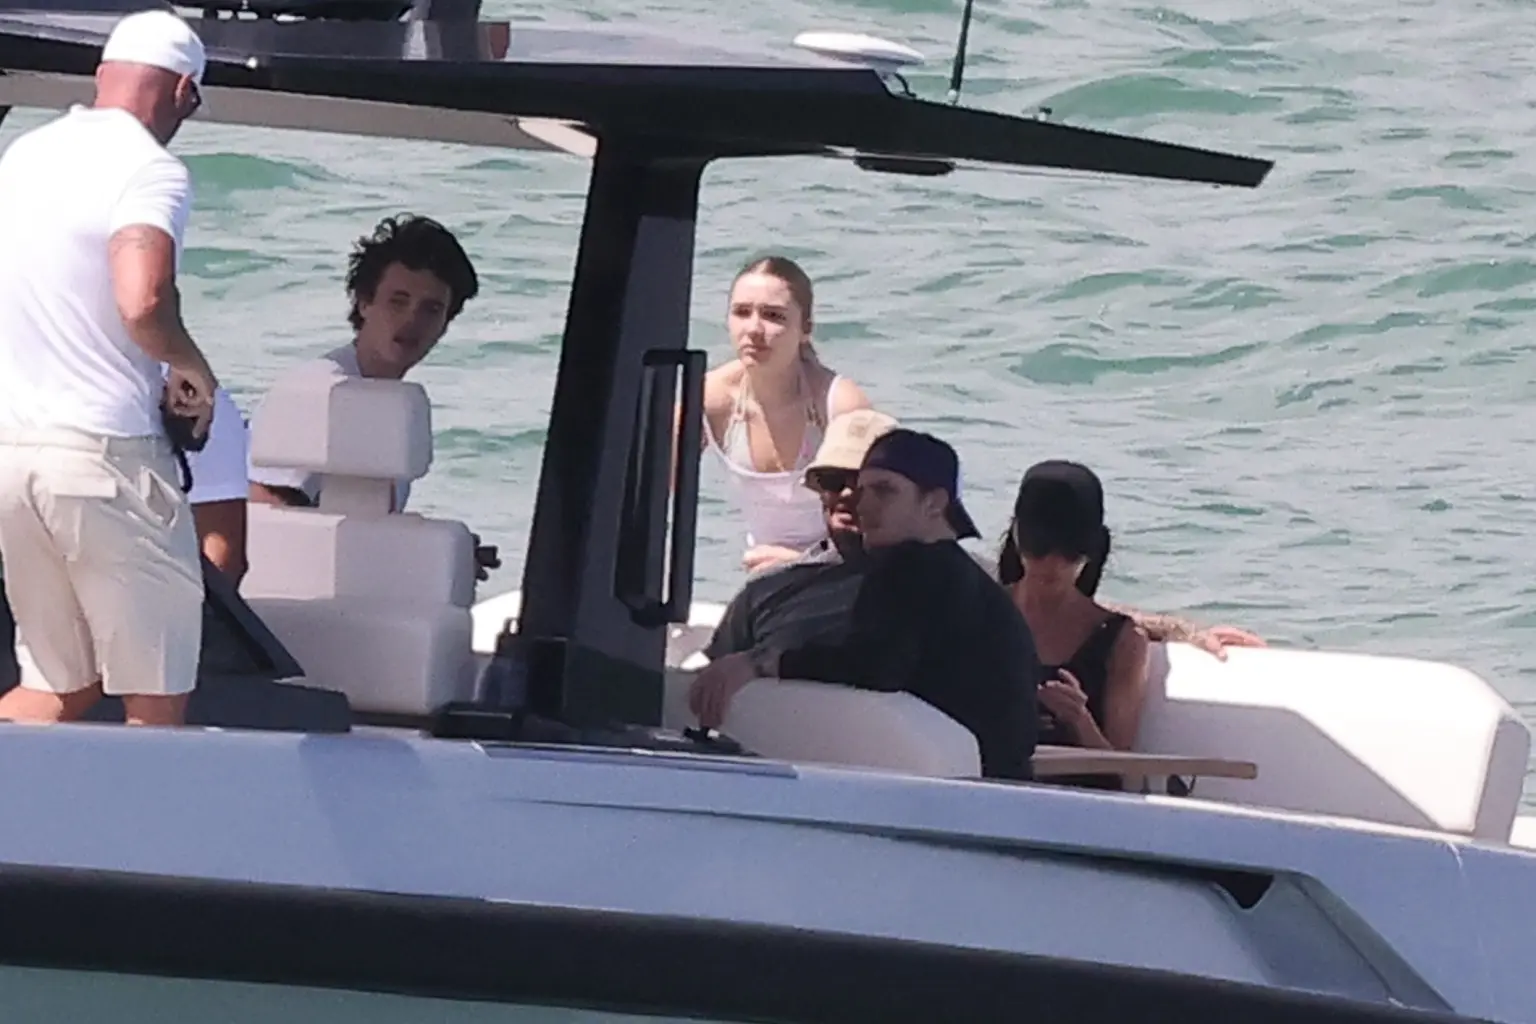 FOTO. David și Victoria Beckham se bucură de o zi însorită cu familia în Miami pe un iaht de lux